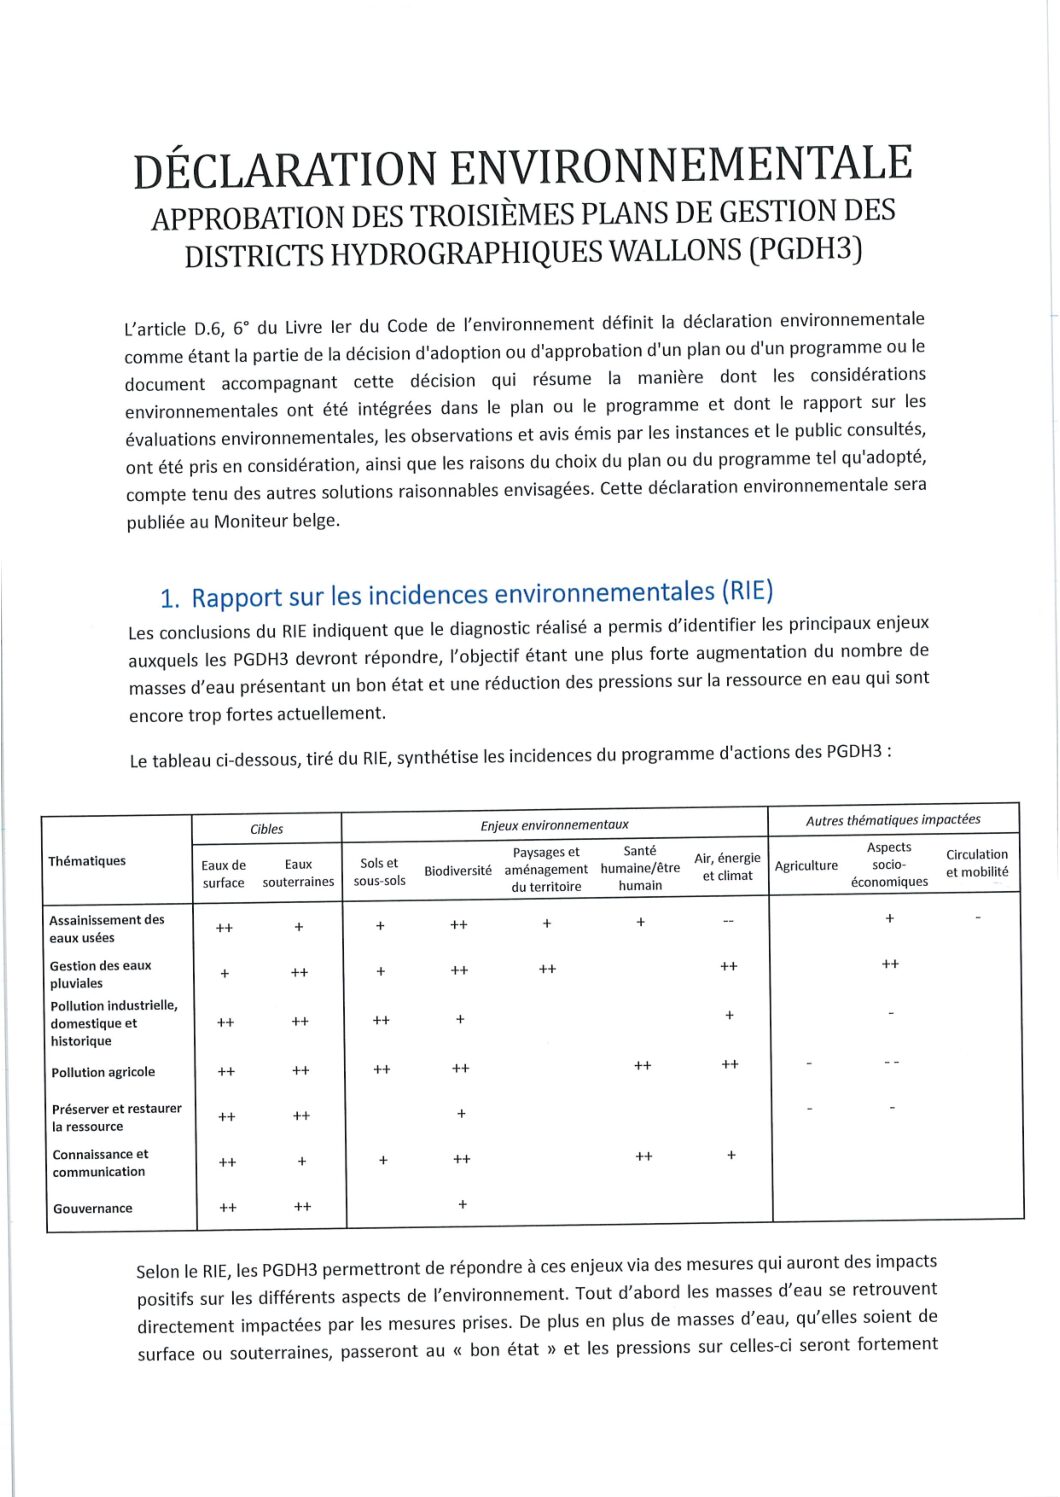 Déclaration environnementale – Approbation des 3ème plans de gestion des districts hydrographiques wallons